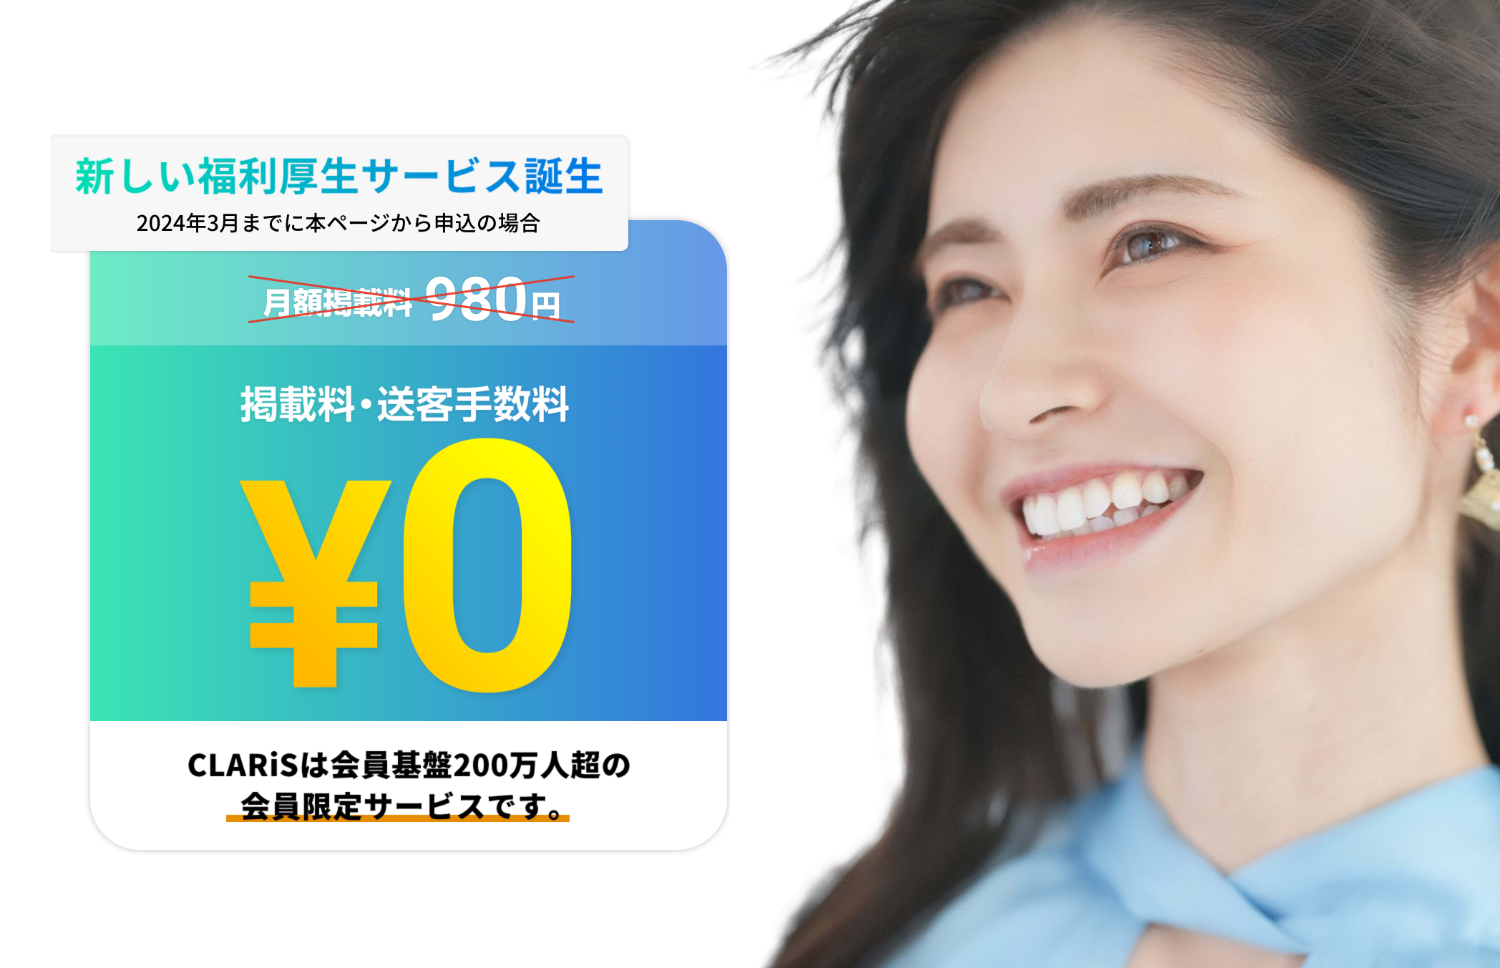 新しい福利厚生サービス誕生（2023年7月までに本ページから申込の場合）・掲載料・送客手数料 ¥0・CLARiSは会員基盤200万人超の会員限定サービスです。